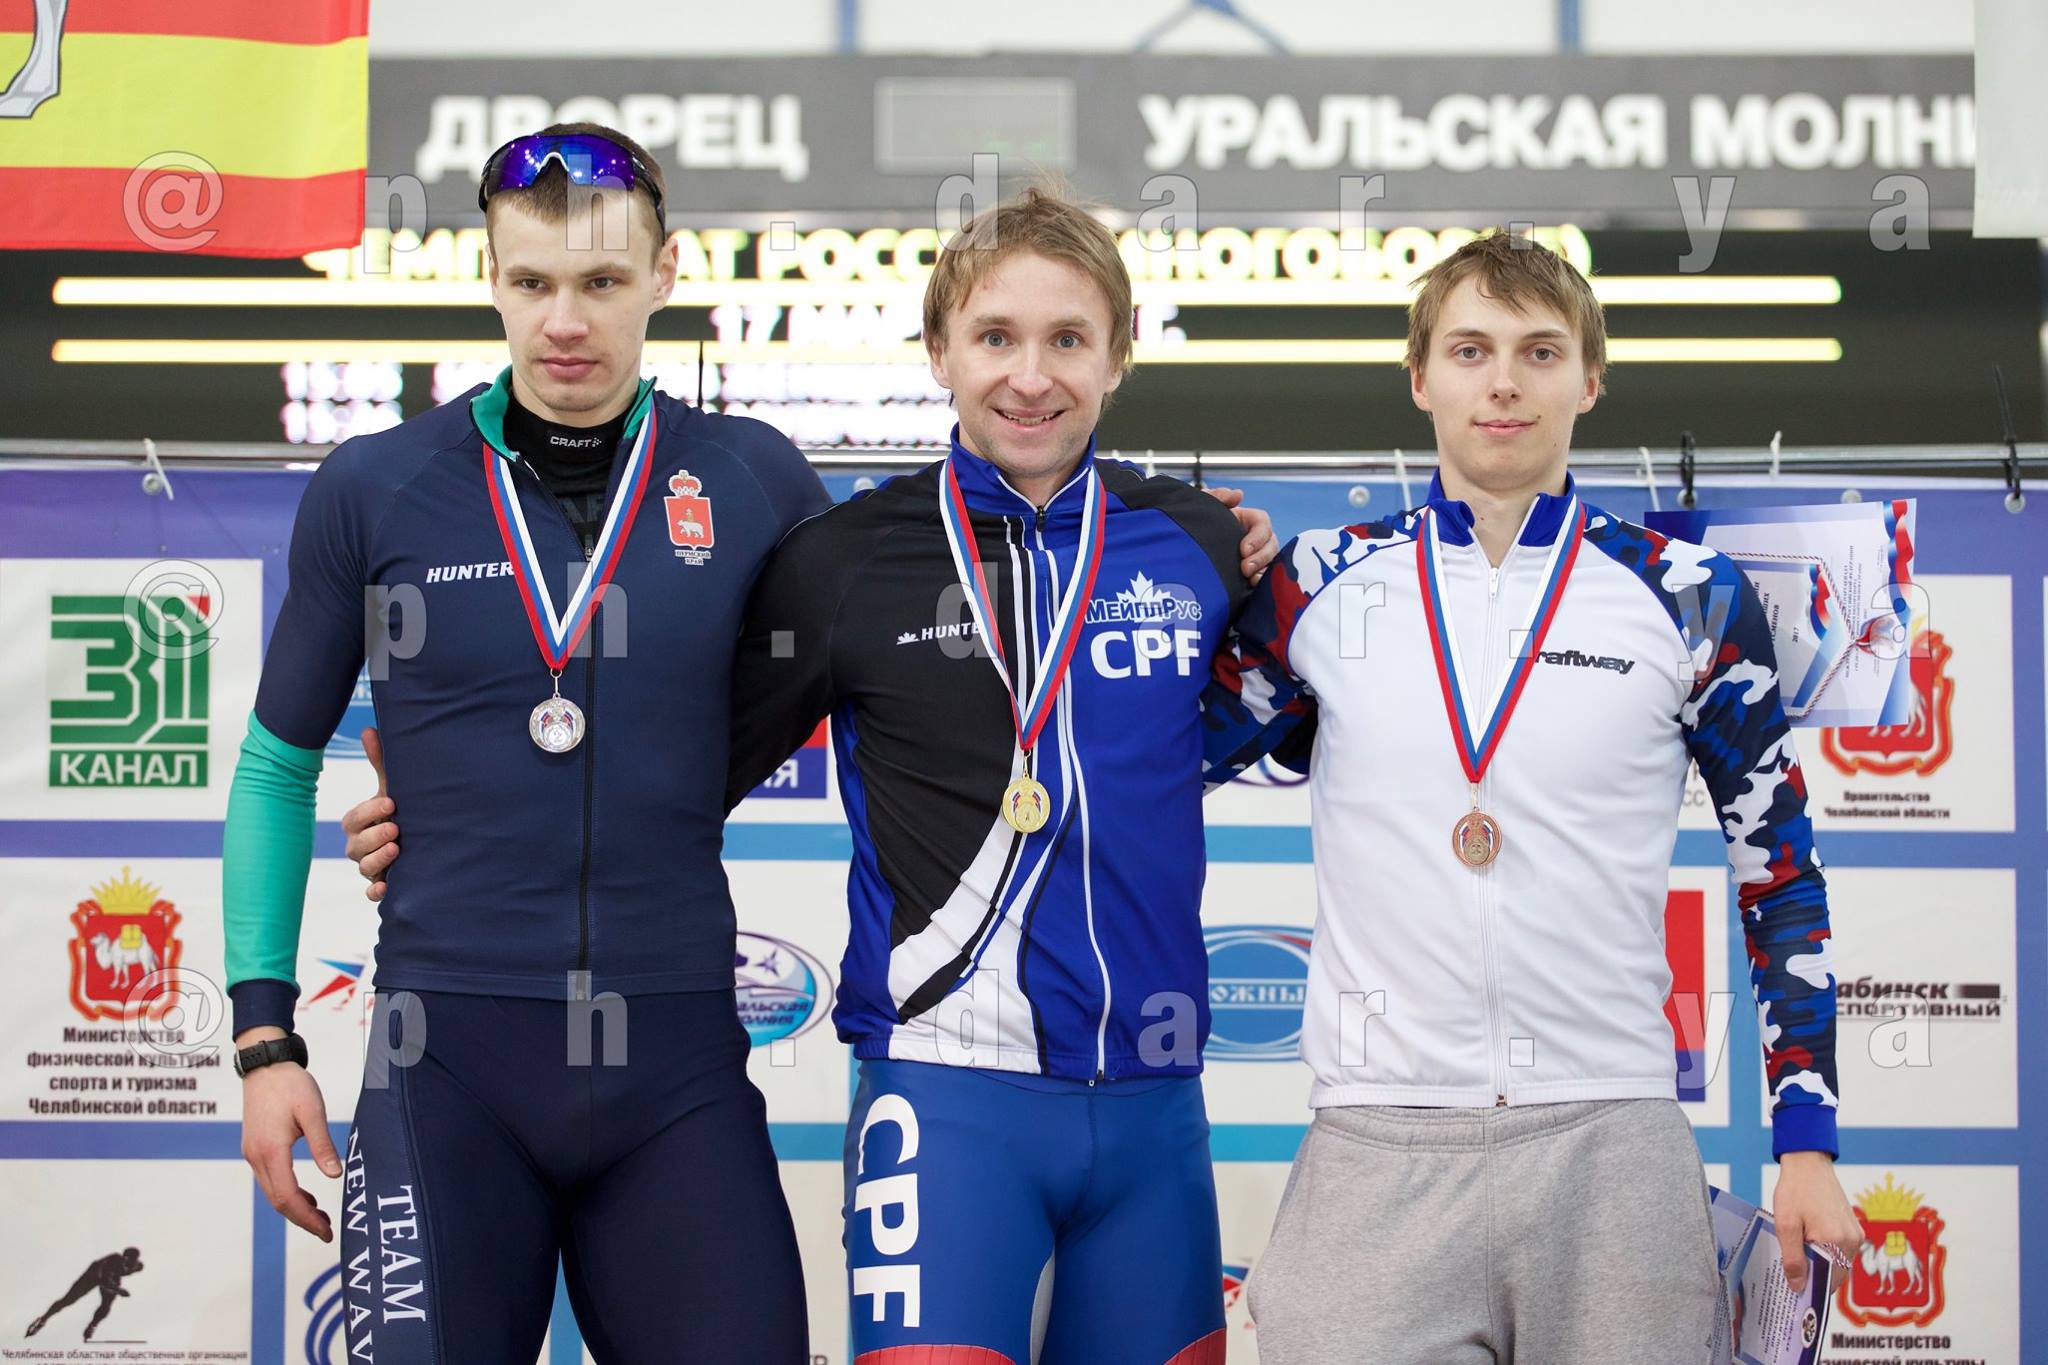 Алексей Есин - чемпион по спринтерскому многоборью3